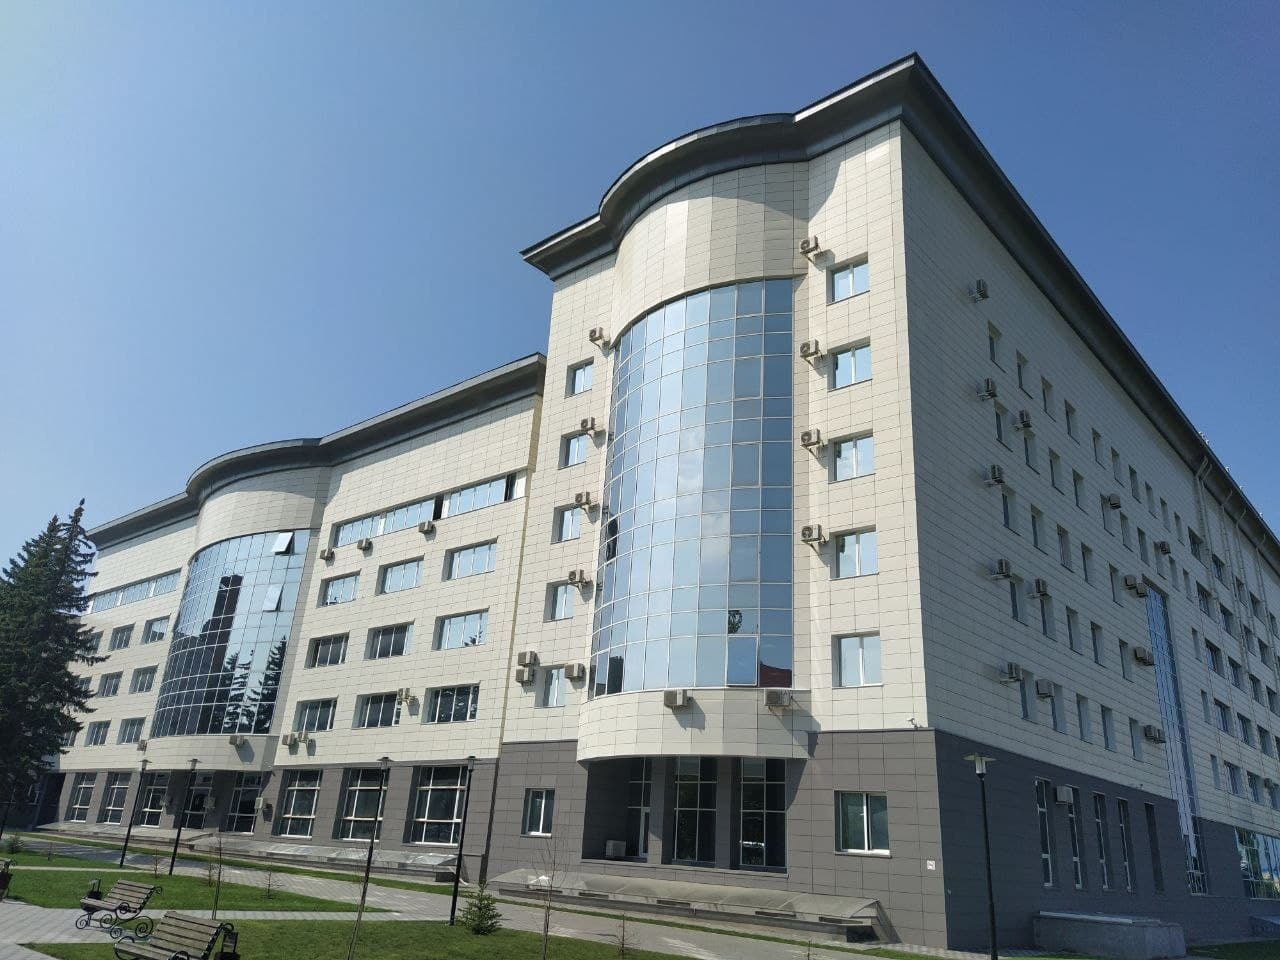 Сайт северо кавказского федерального университета